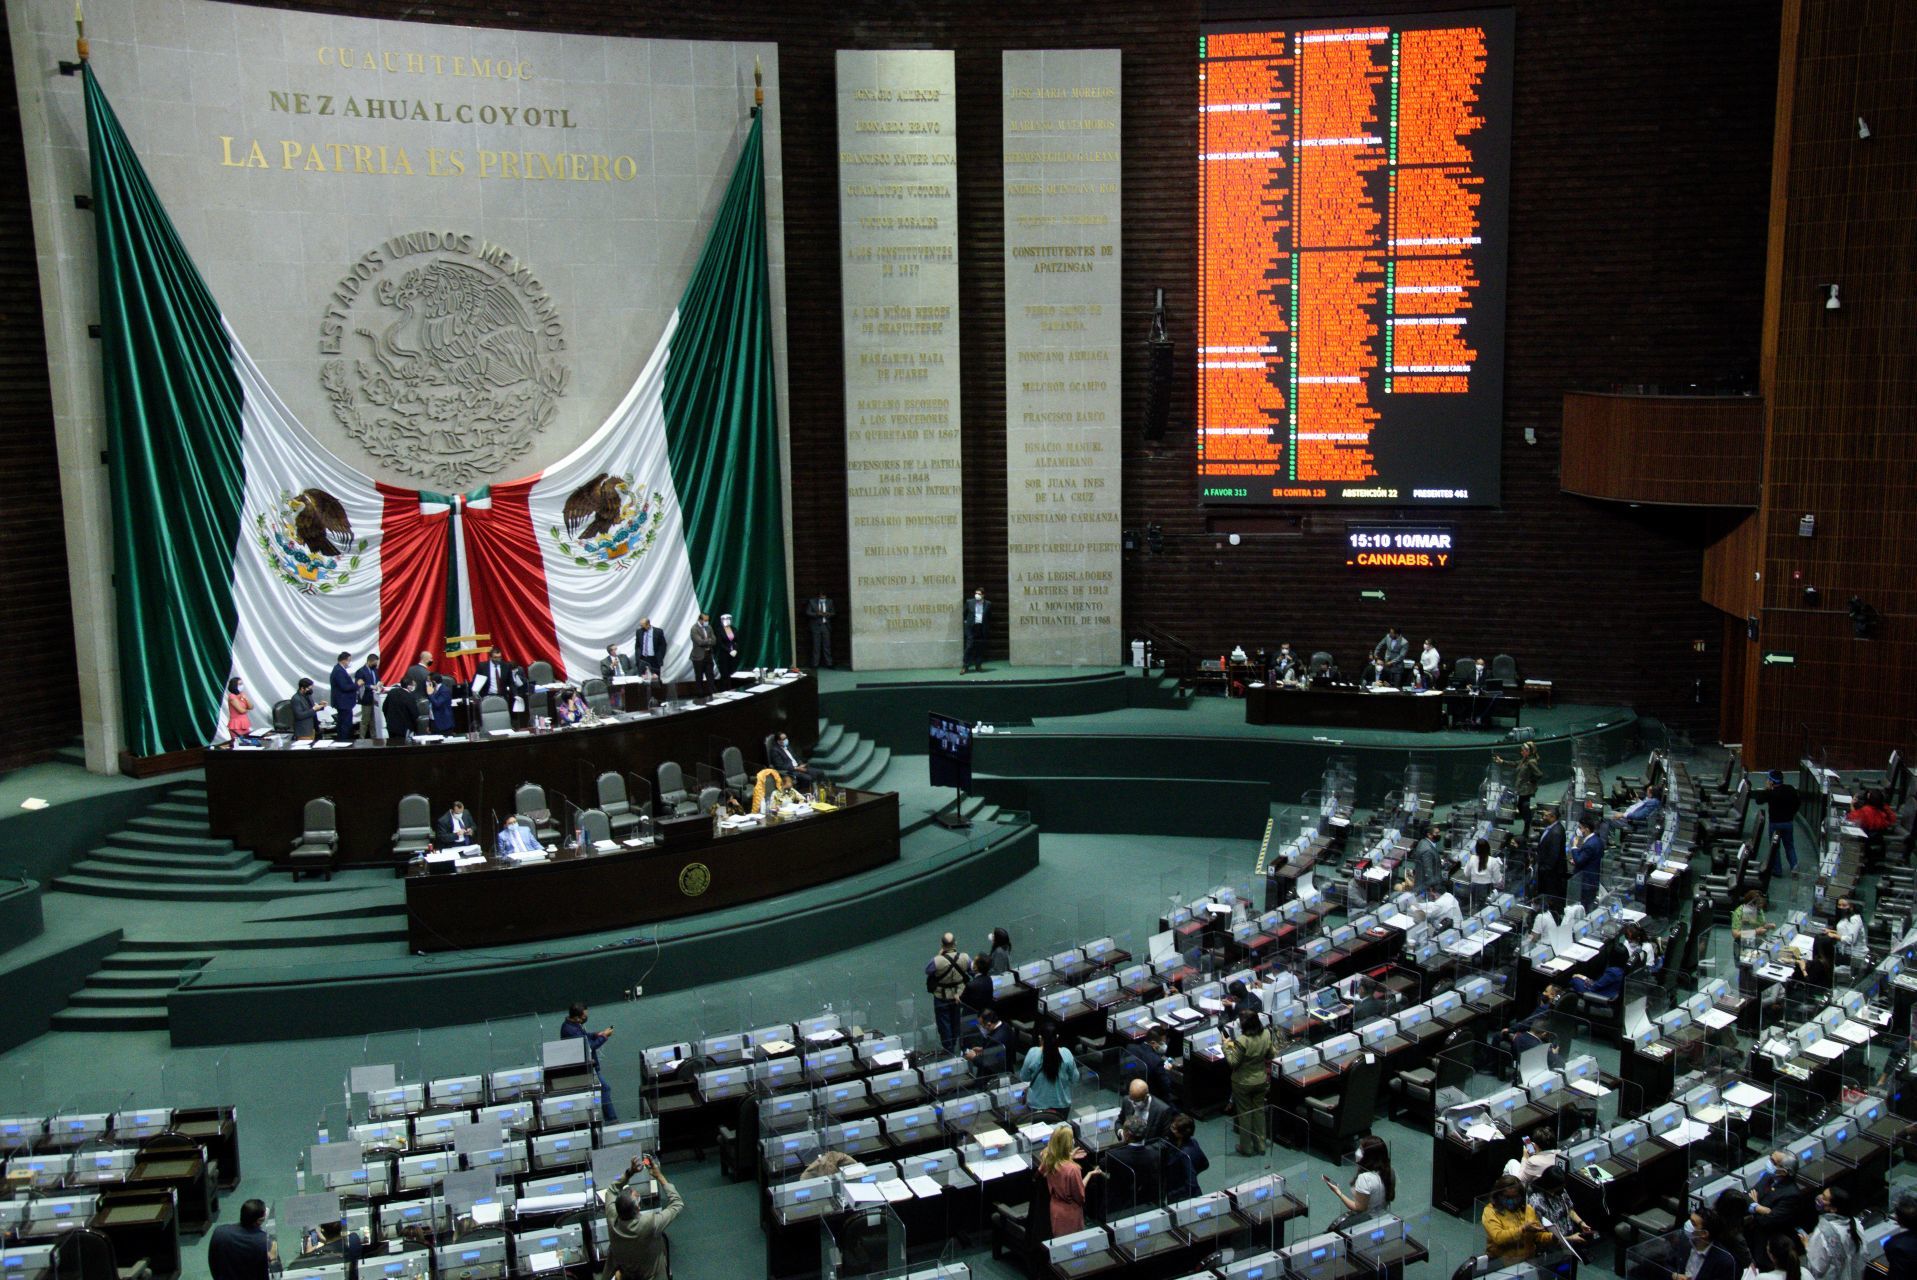 Los plurinominales fueron implementados para contrarrestar poder al partido con mayoría (FOTO: MARIO JASSO/CUARTOSCURO.COM)